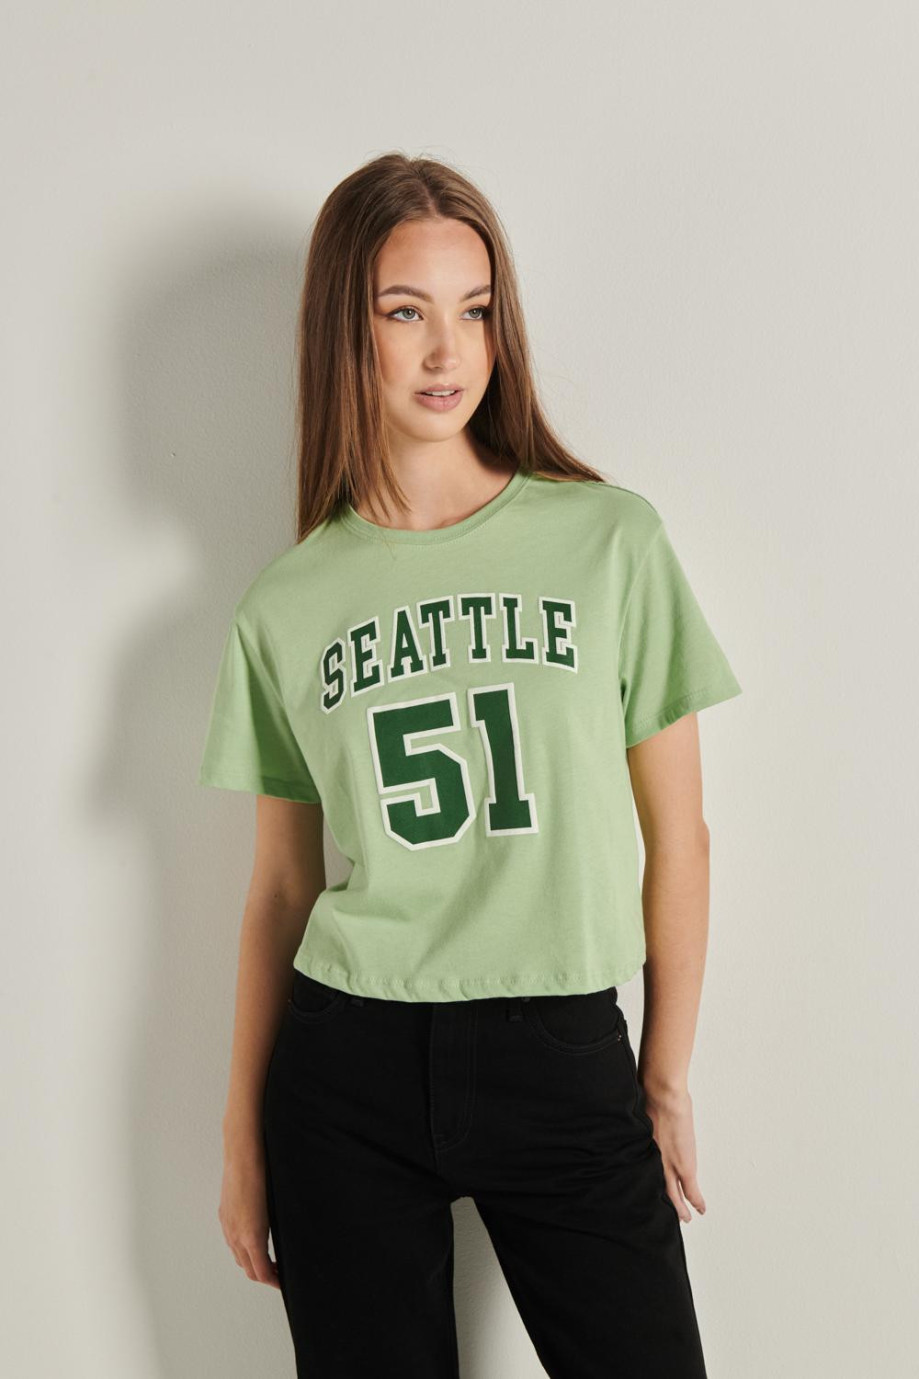 Camiseta verde clara crop top con diseño college de Seattle en frente